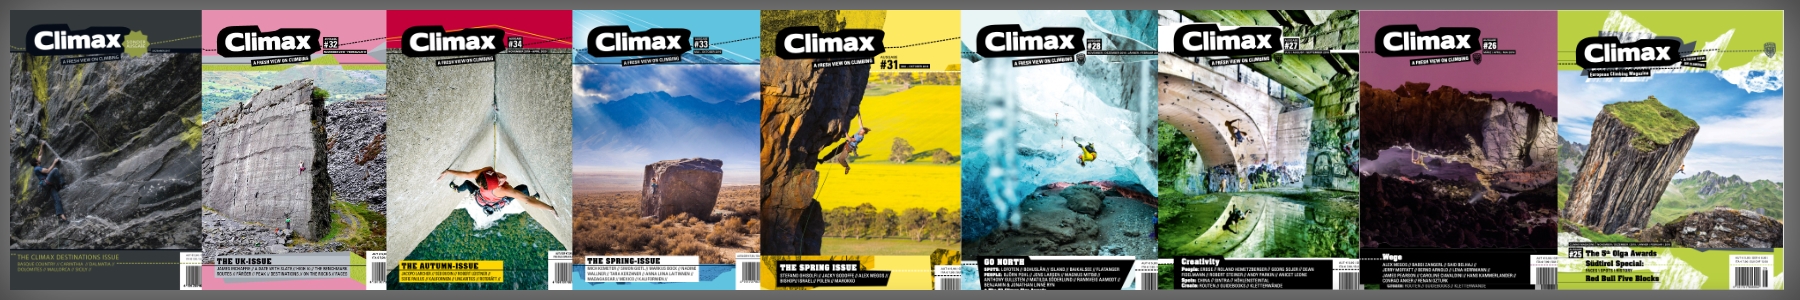 Climax Magazine Shop